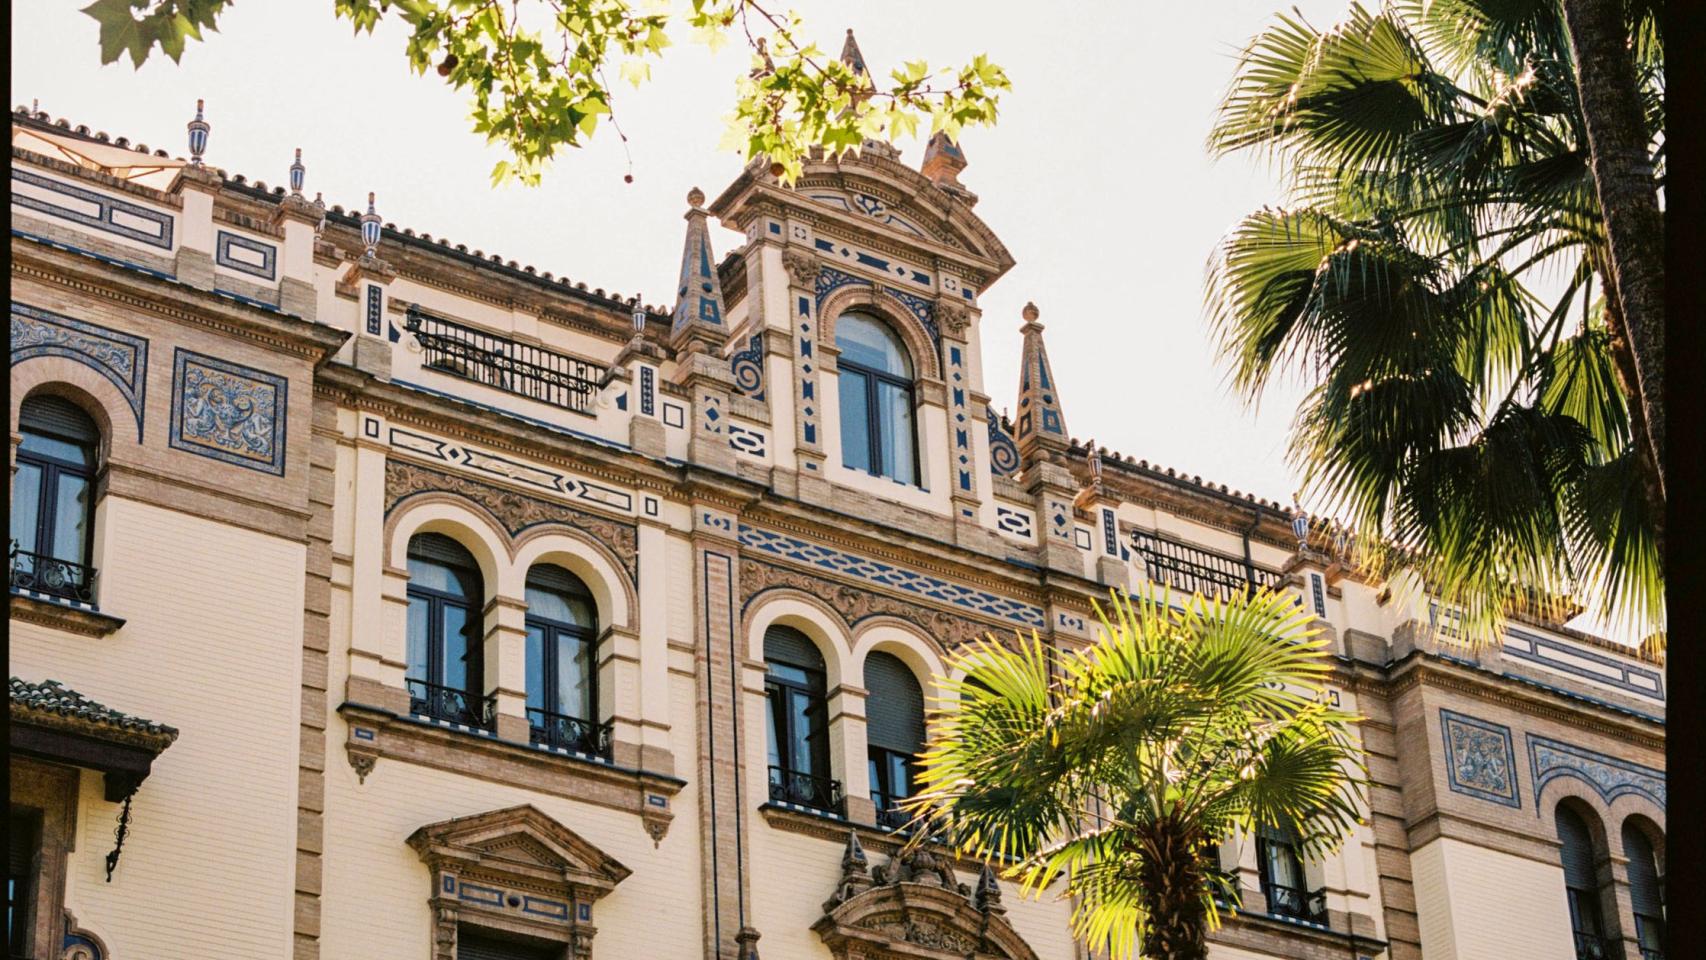 La fachada principal del hotel Alfonso XIII de Sevilla.